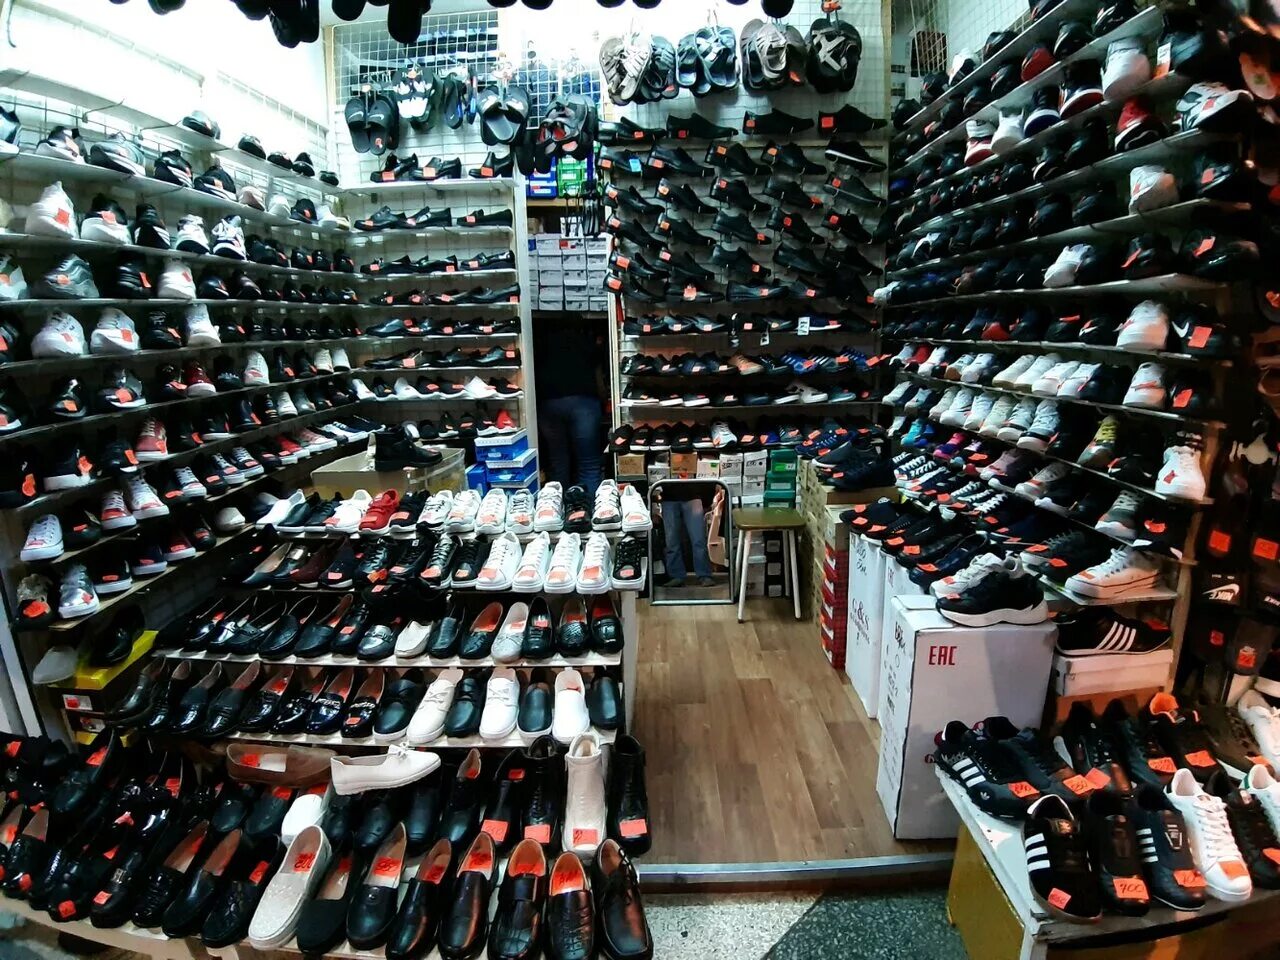 Первый магазин обуви. Рынок обуви. Магазин обуви. Обувной магазин на рынке. Советский обувной магазин.